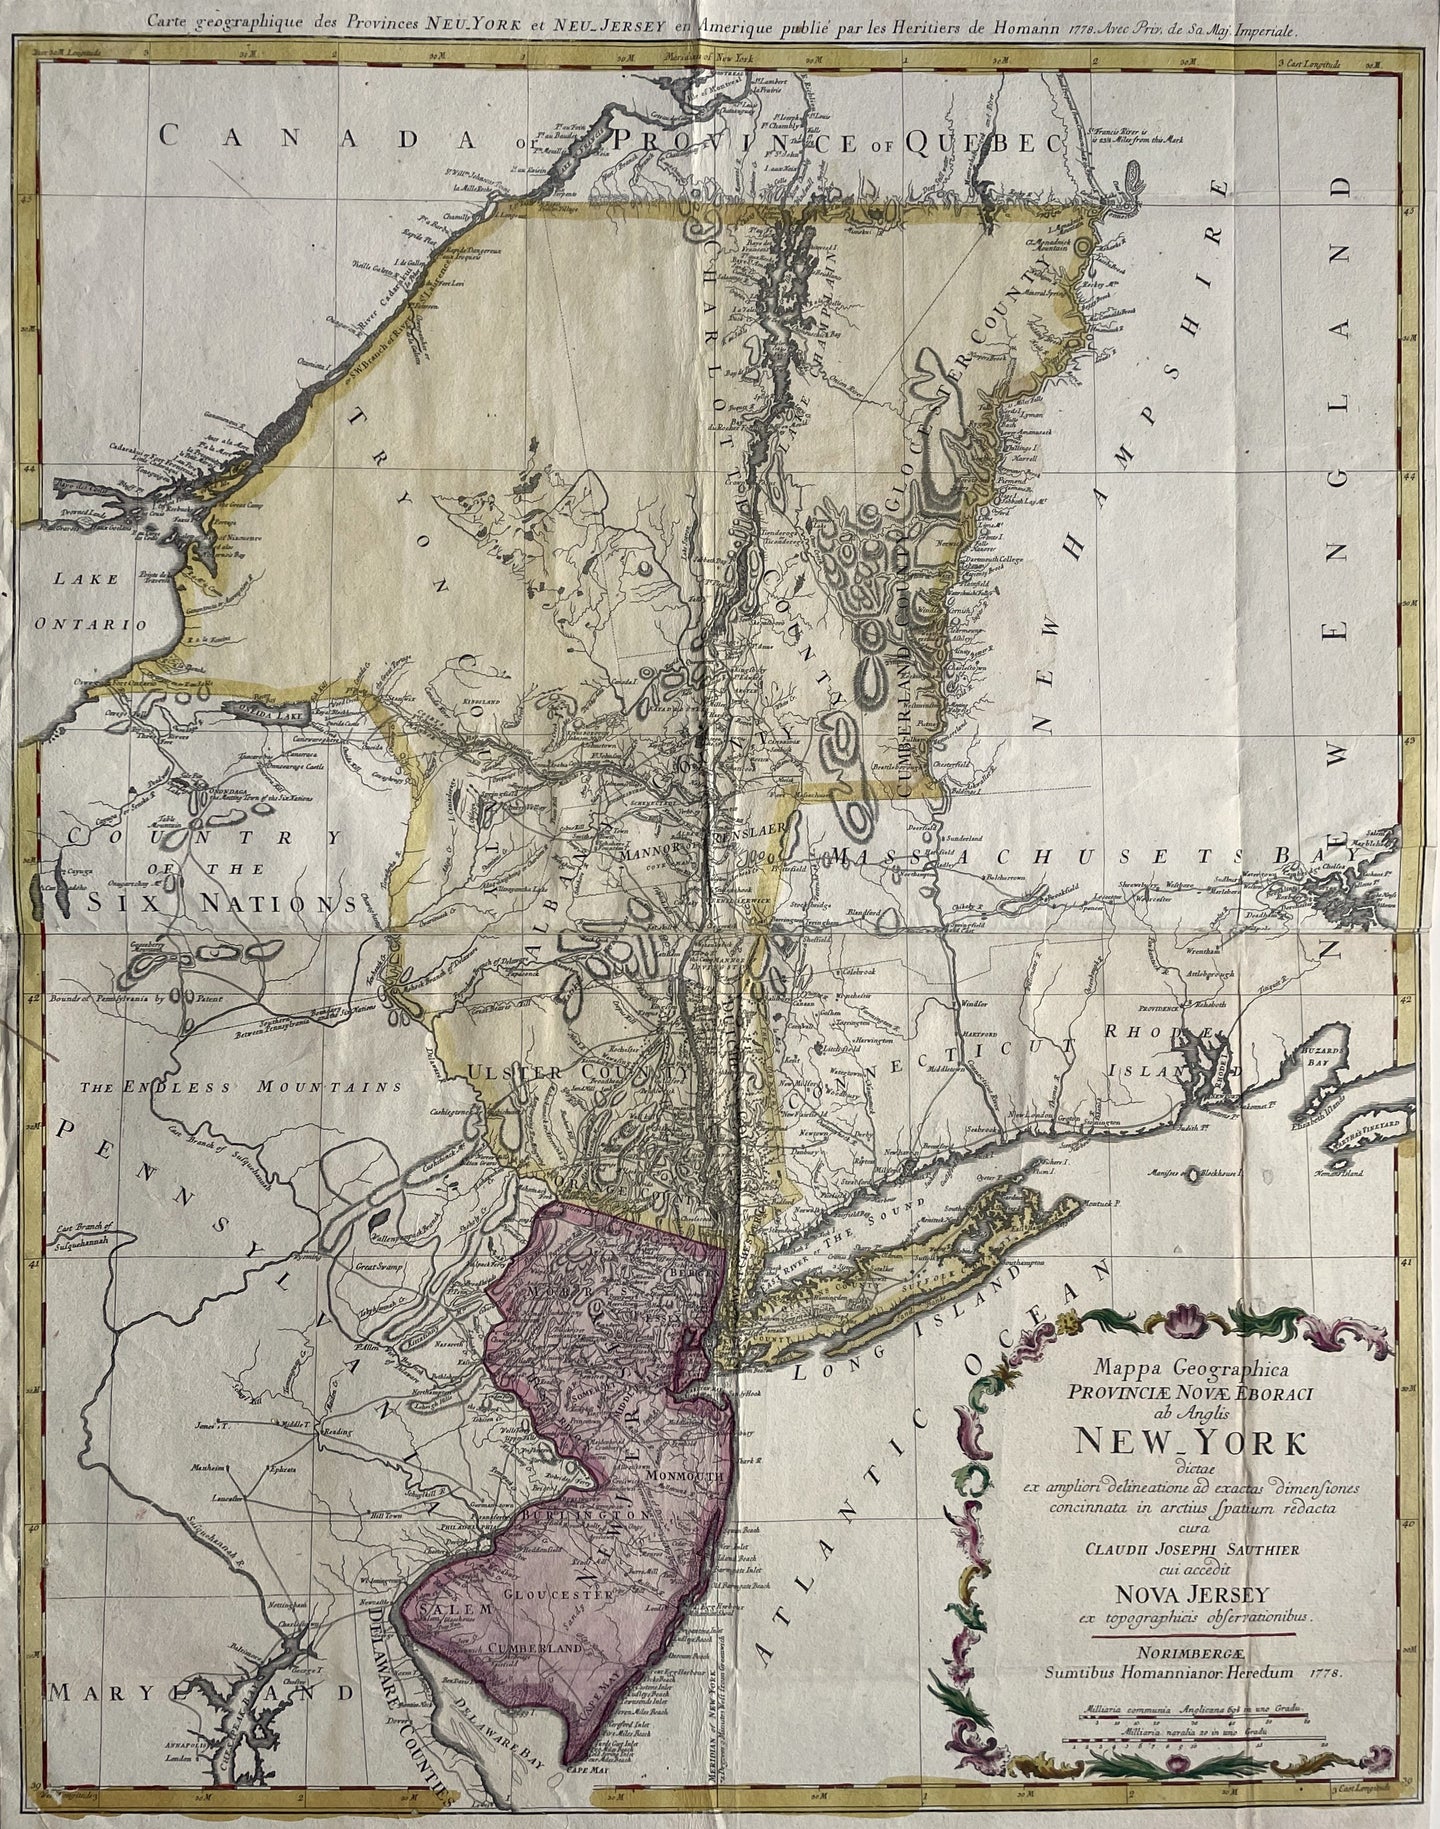 Verenigde Staten New York New Jersey United States - Homann Heirs / Claude Joseph Sauthier - 1778